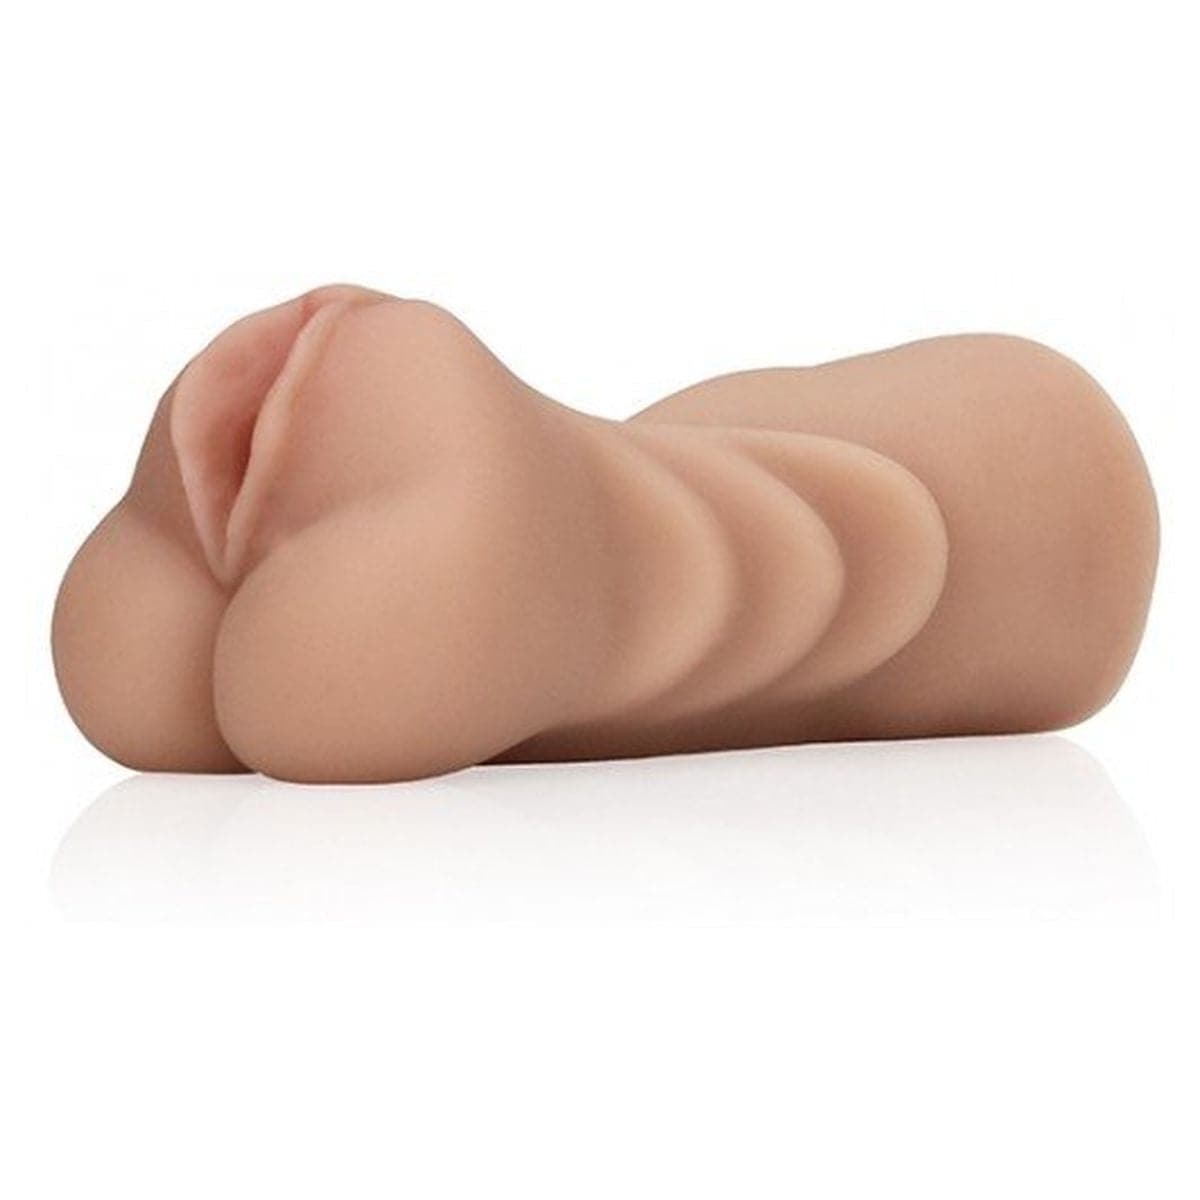 Masturbador Policia Atrevida Play Solo - Vagina de 12,5 cm Qualidade TPR  Shots Toys   